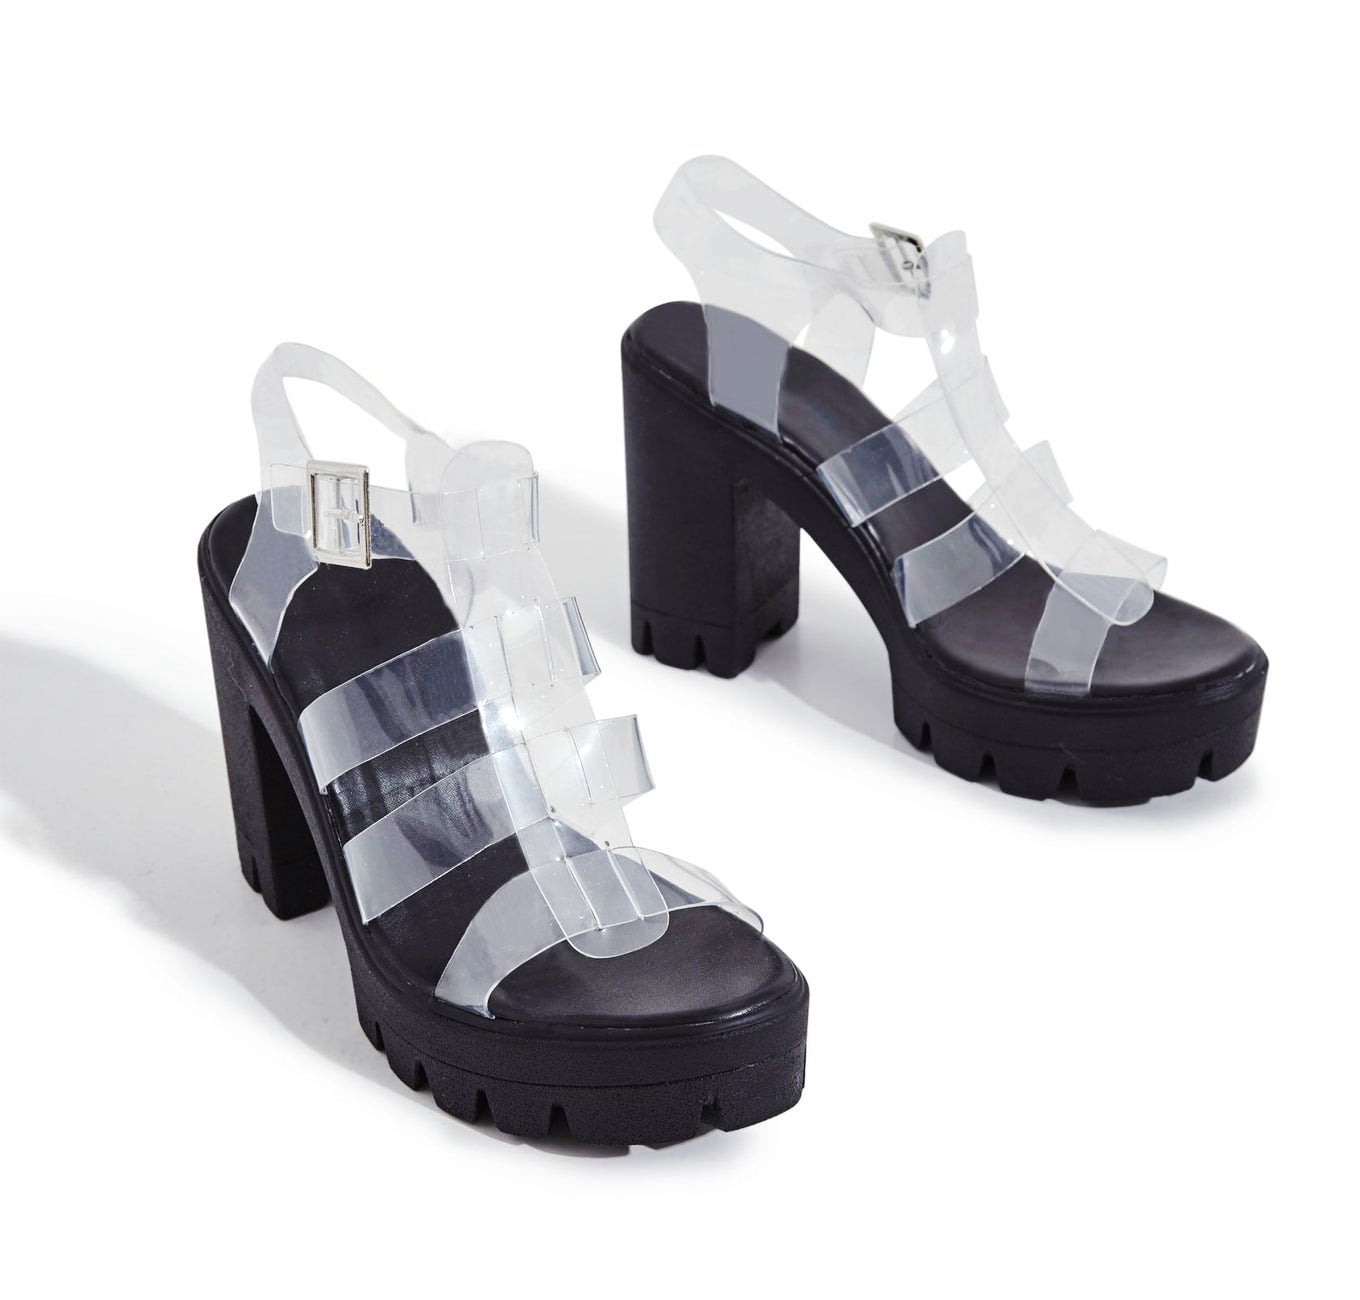 black platform strap sandals